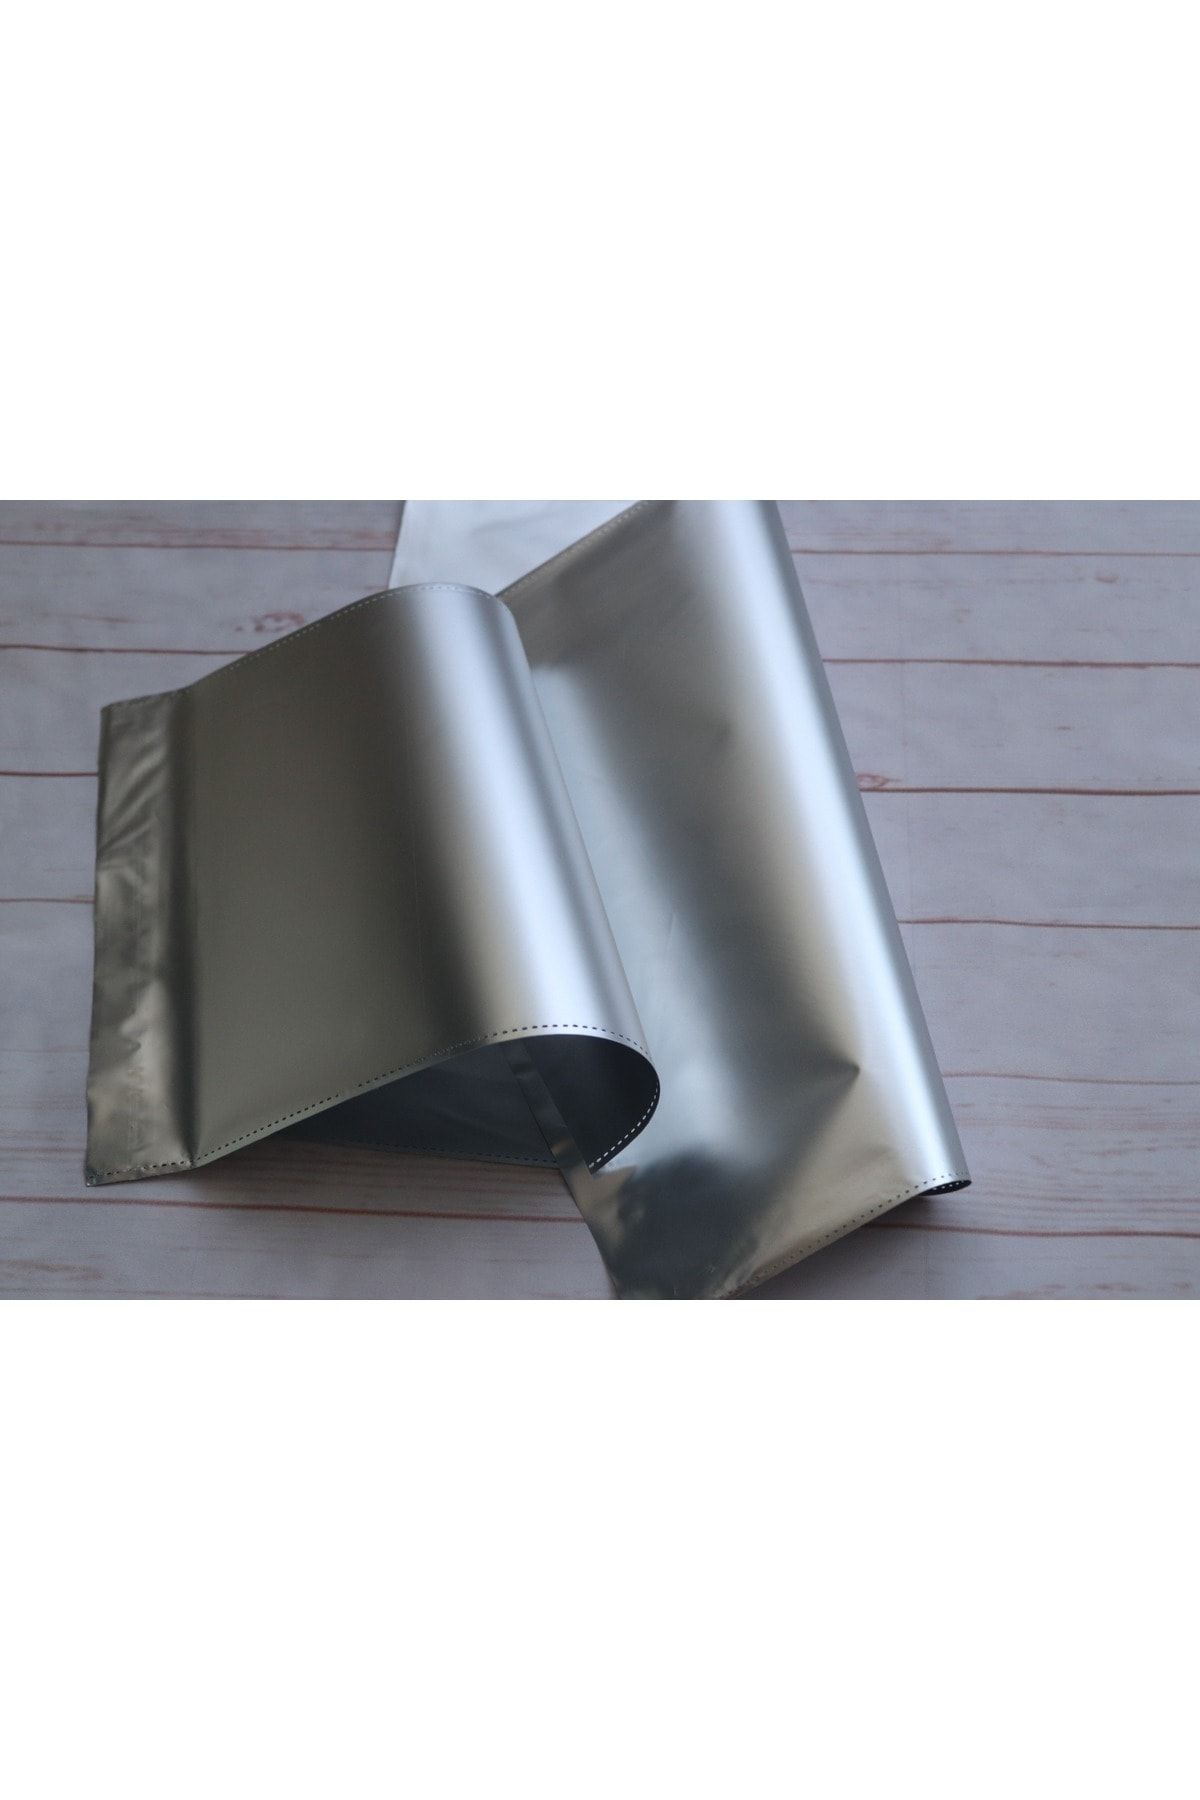 demontecraft Gümüş Gri Lüx Metalik Yapışkanlı Hediye Paketi Büyük Boy 35x30 10'lu